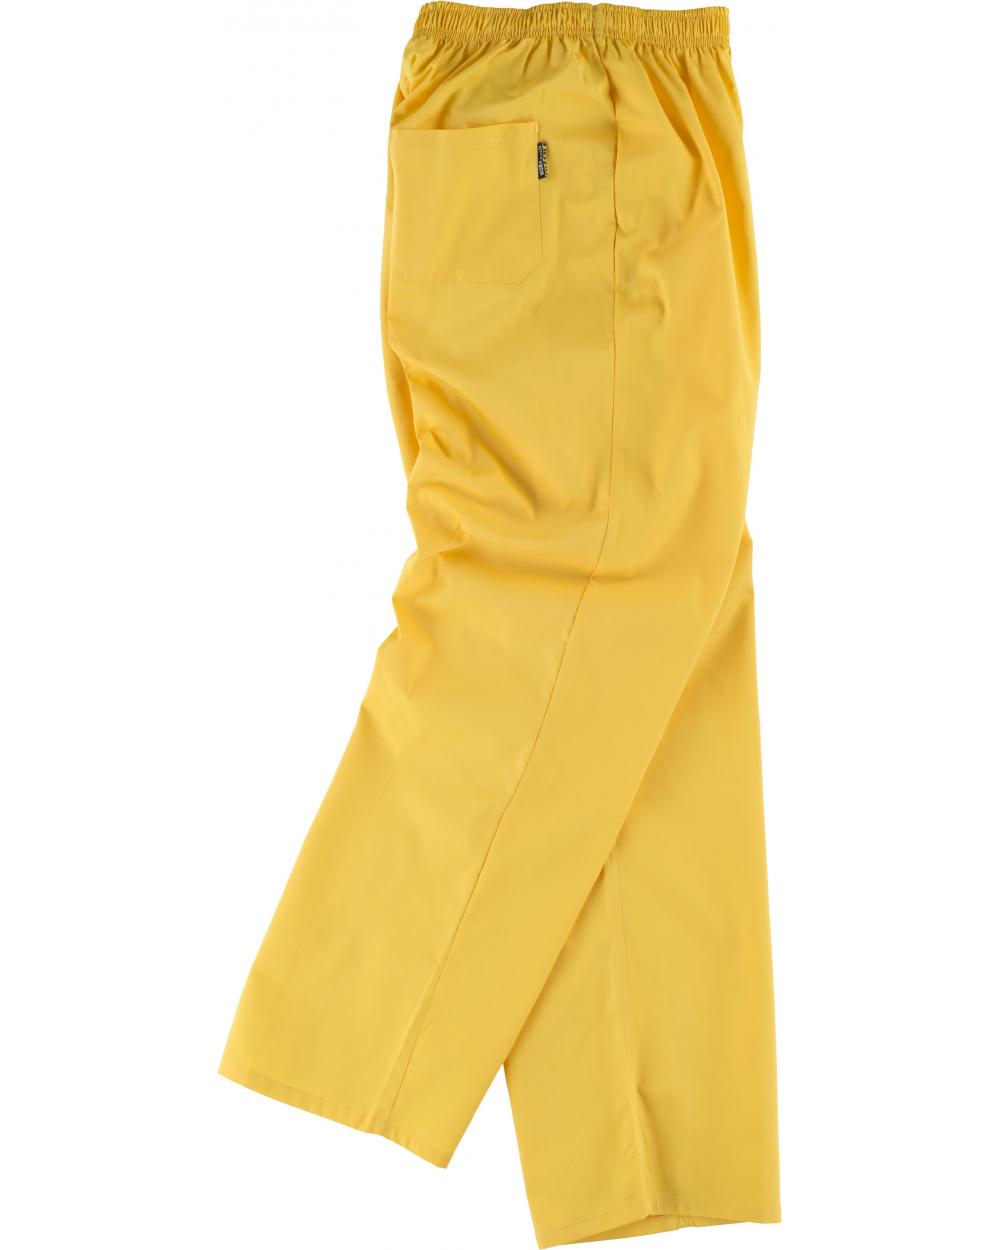 Comprar Pantalon de pijama sanitario unisex B9300 Amarillo workteam barato